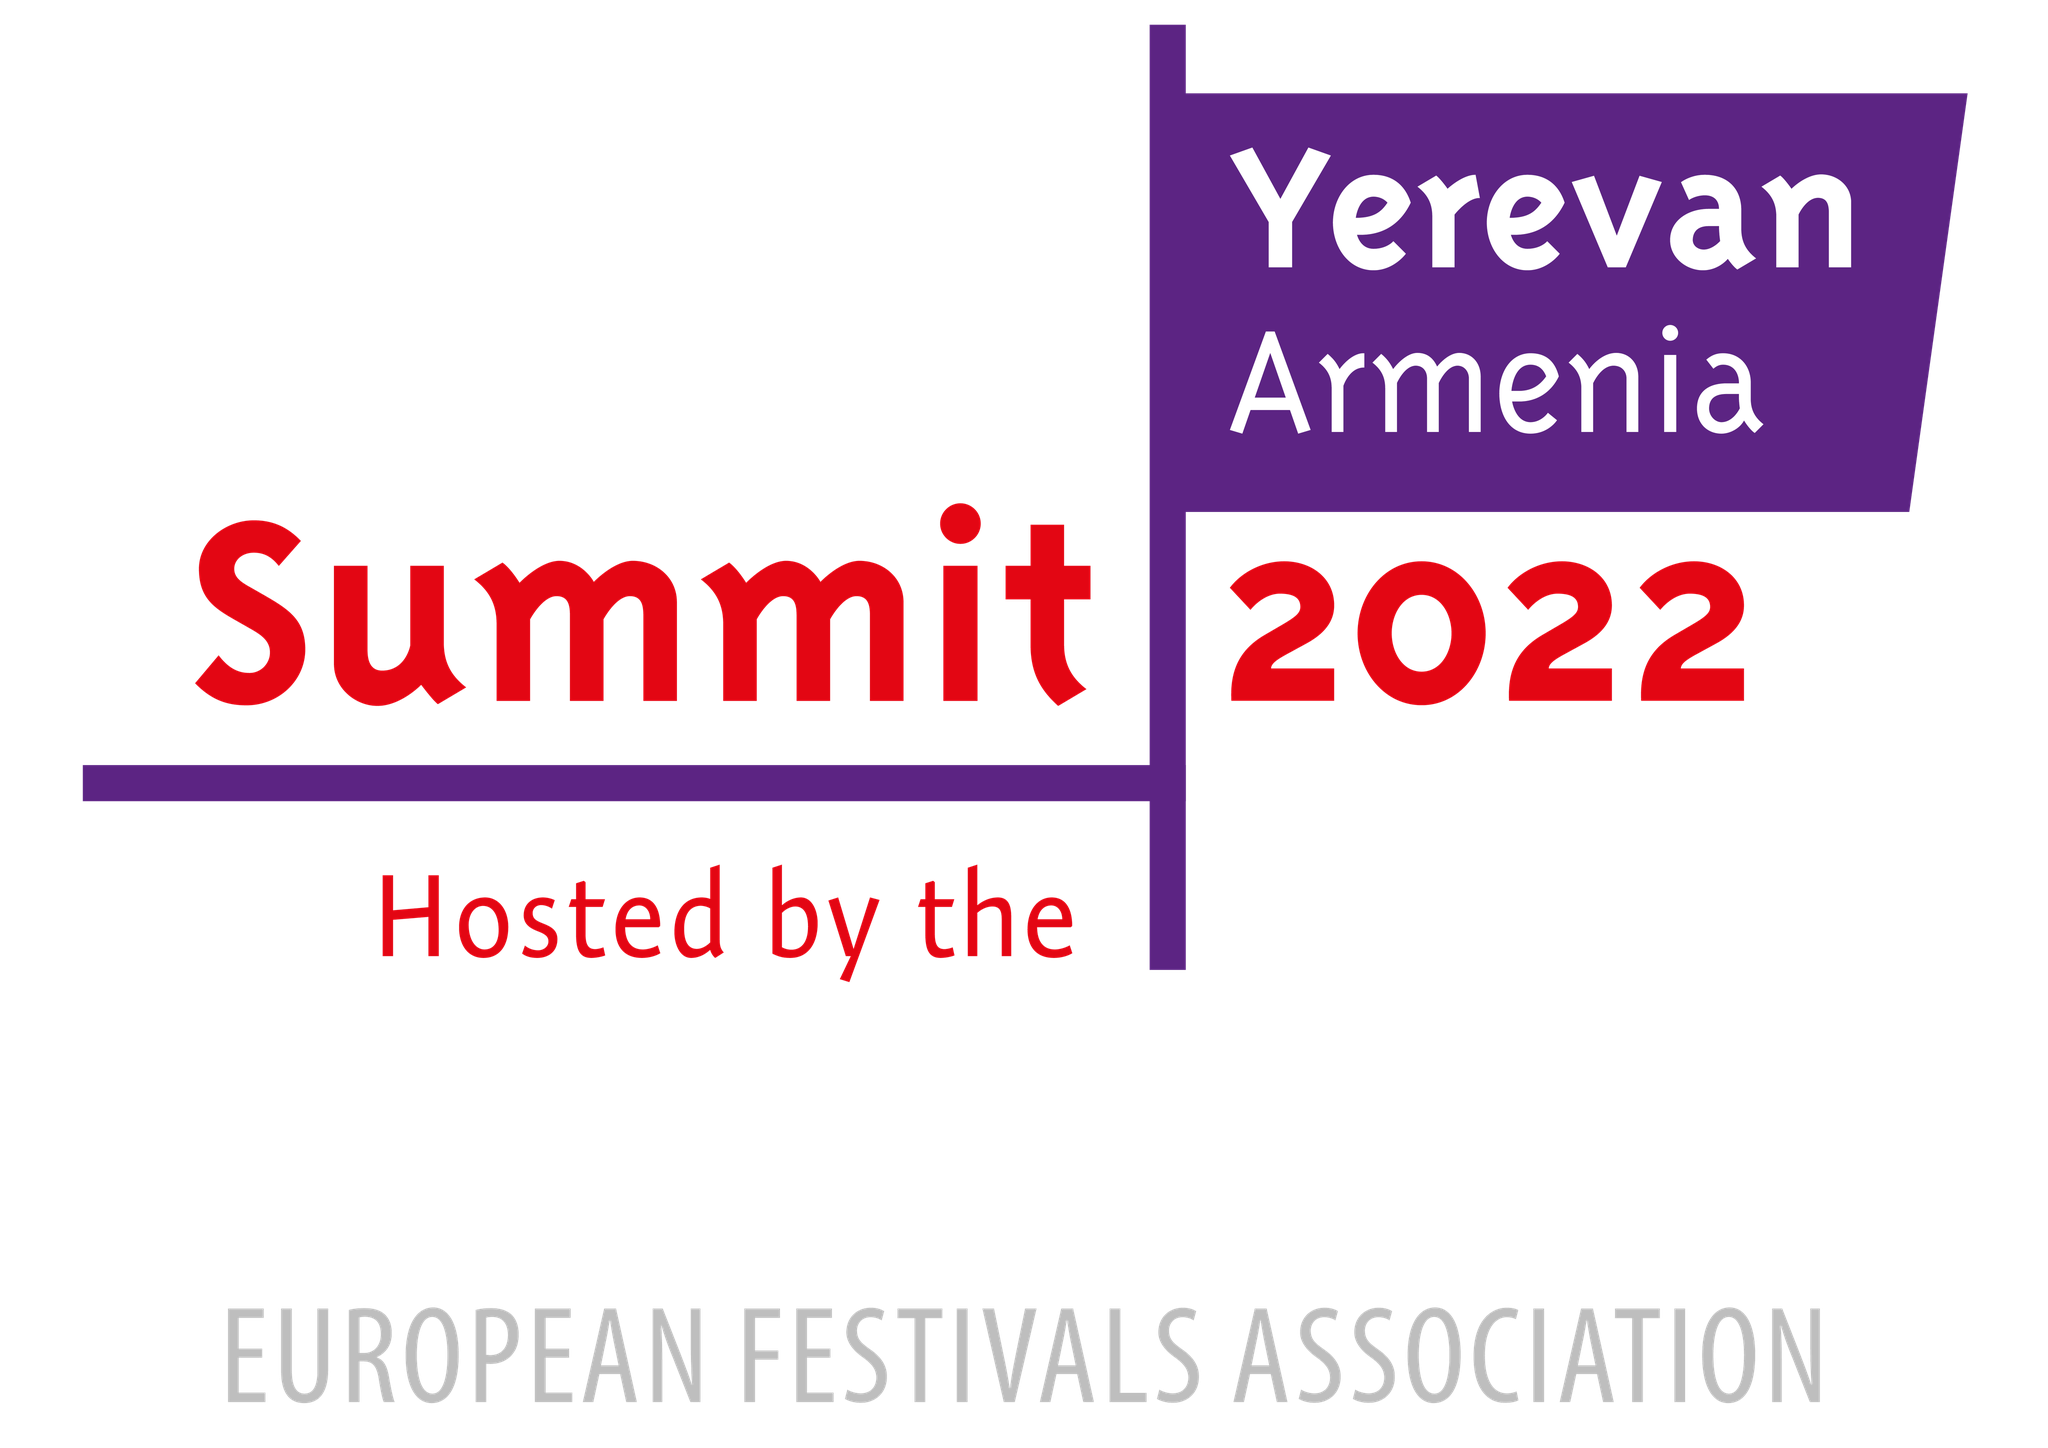 Երևանը կհյուրընկալի փառատոնների եվրոպական ասոցիացիայի 70-րդ ամյակի գագաթնաժողովը